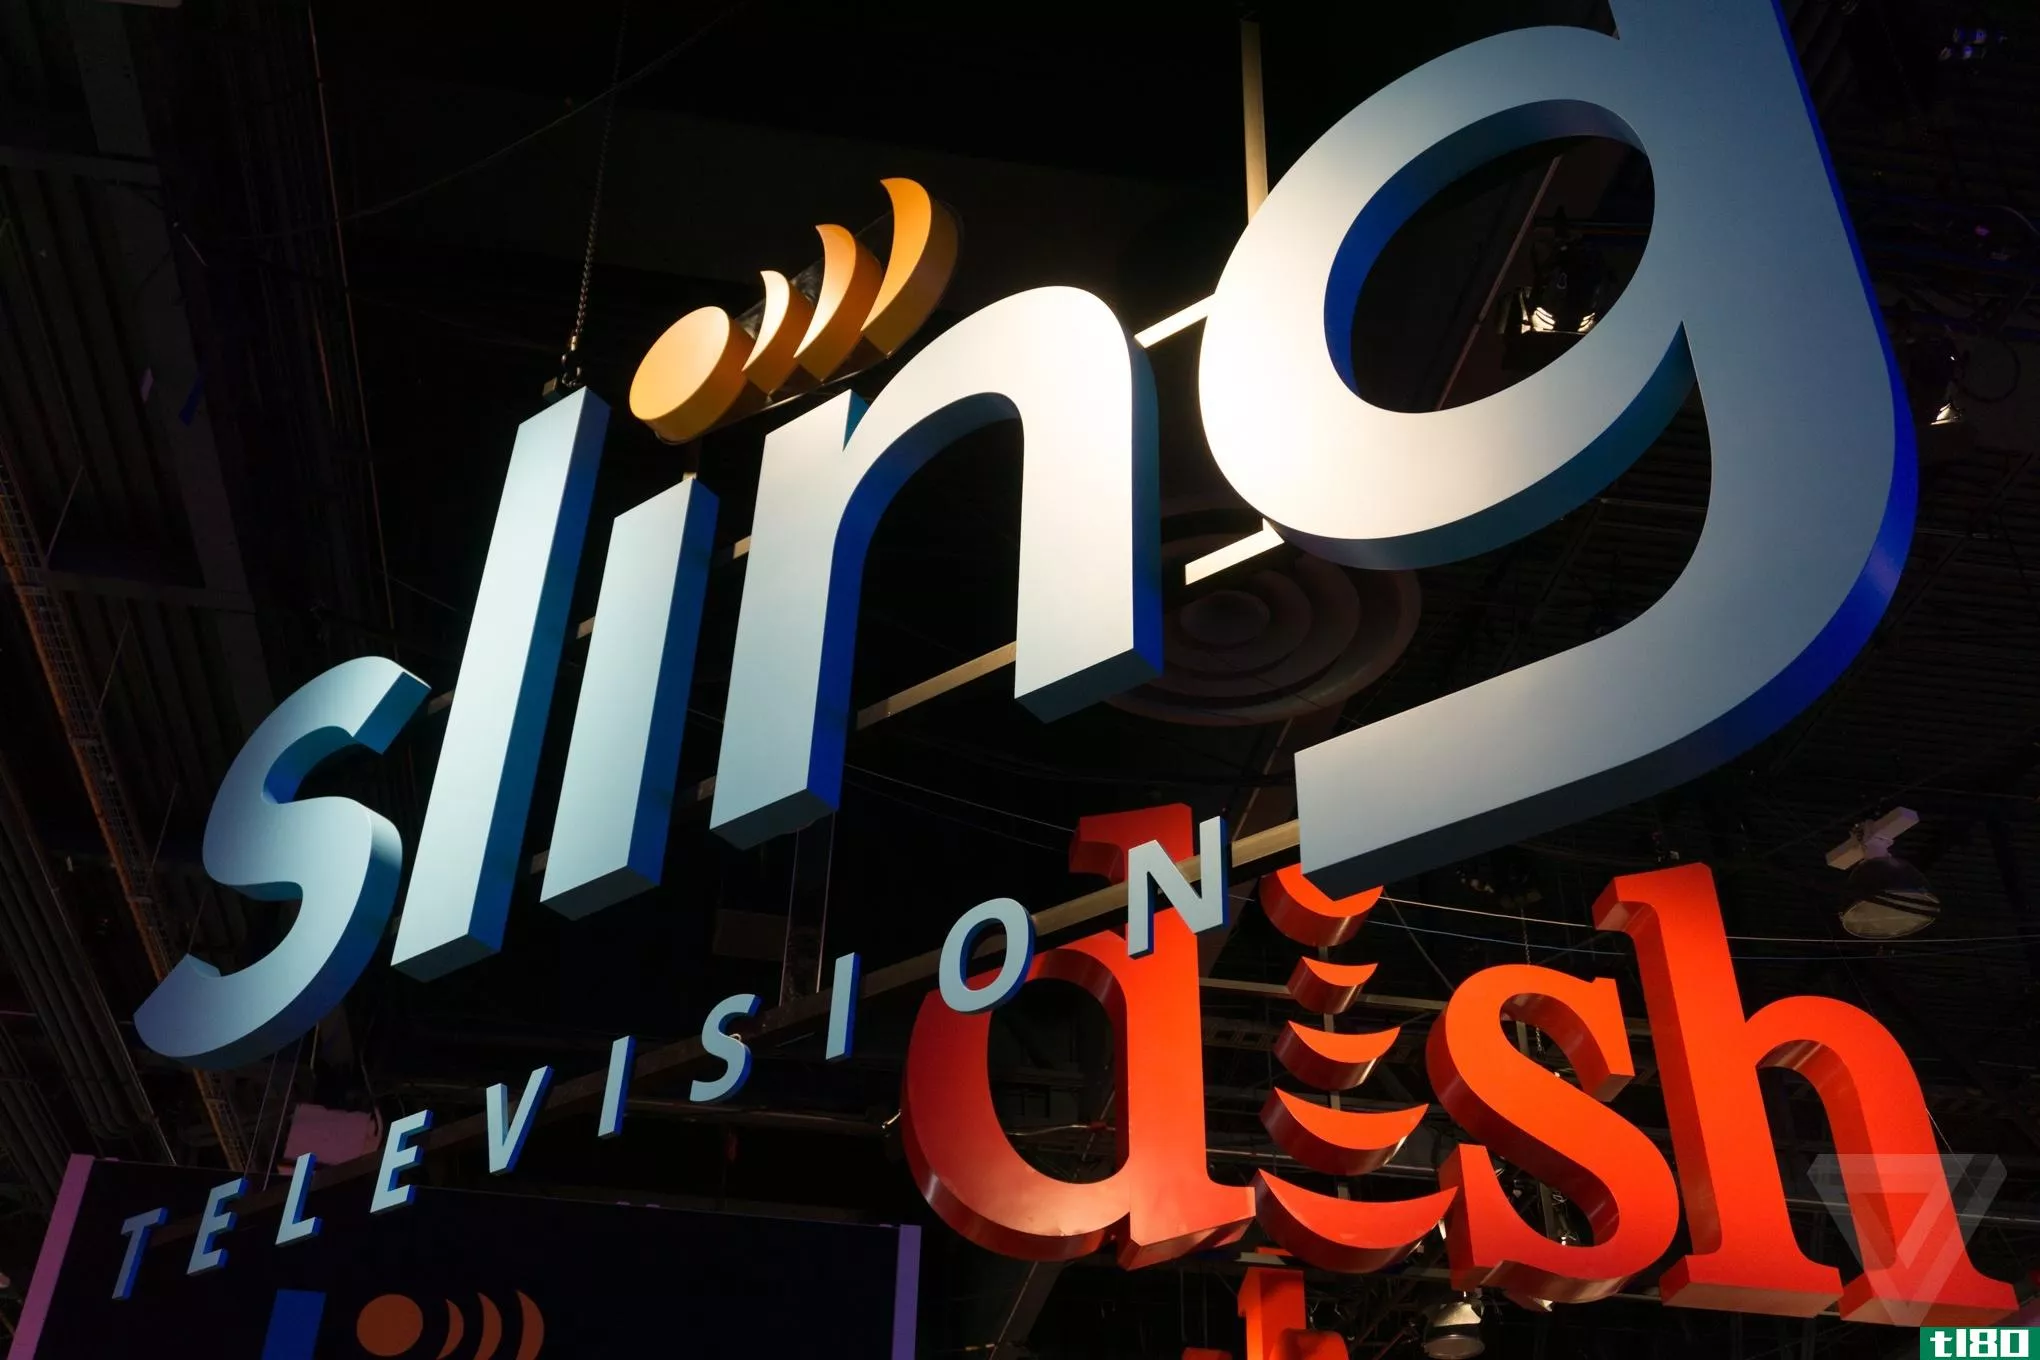 喜剧中心、bet、mtv以及更多的电视节目都将登陆sling tv